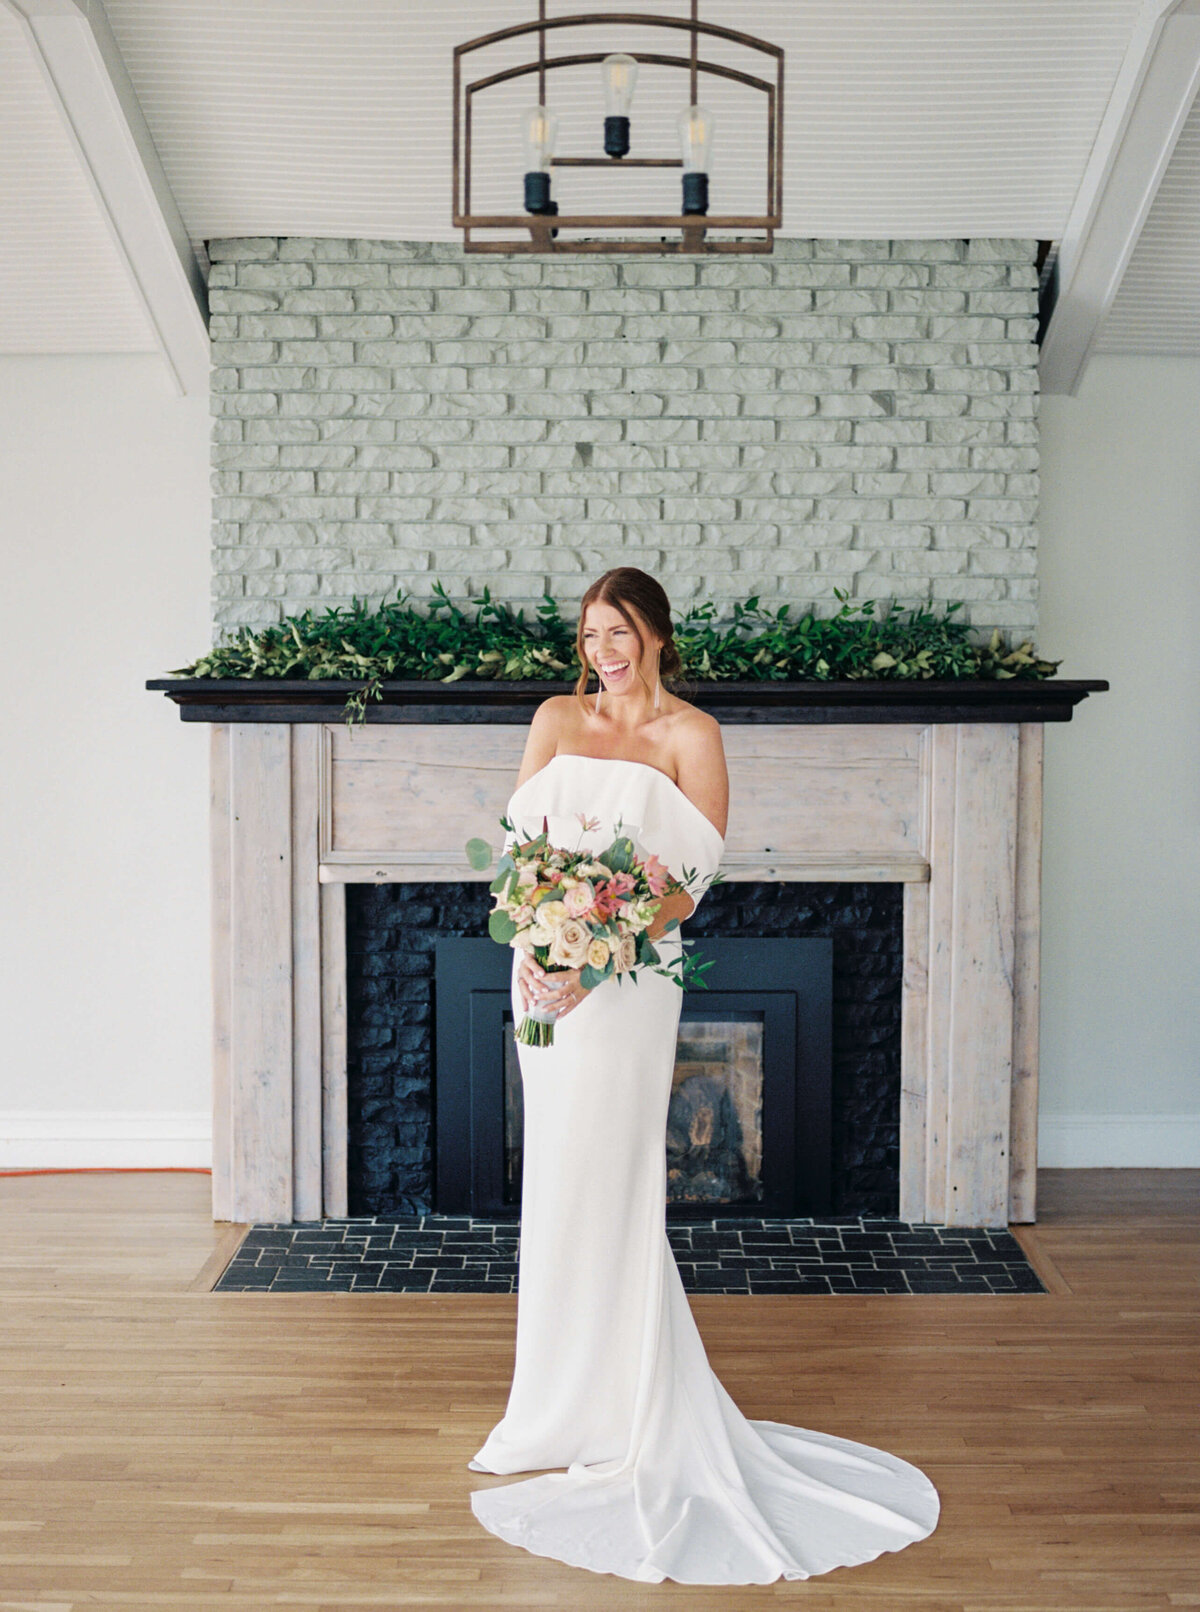 Bride standing in front of fireplace at Oceanstone Resort Wedding in Nova Scotia